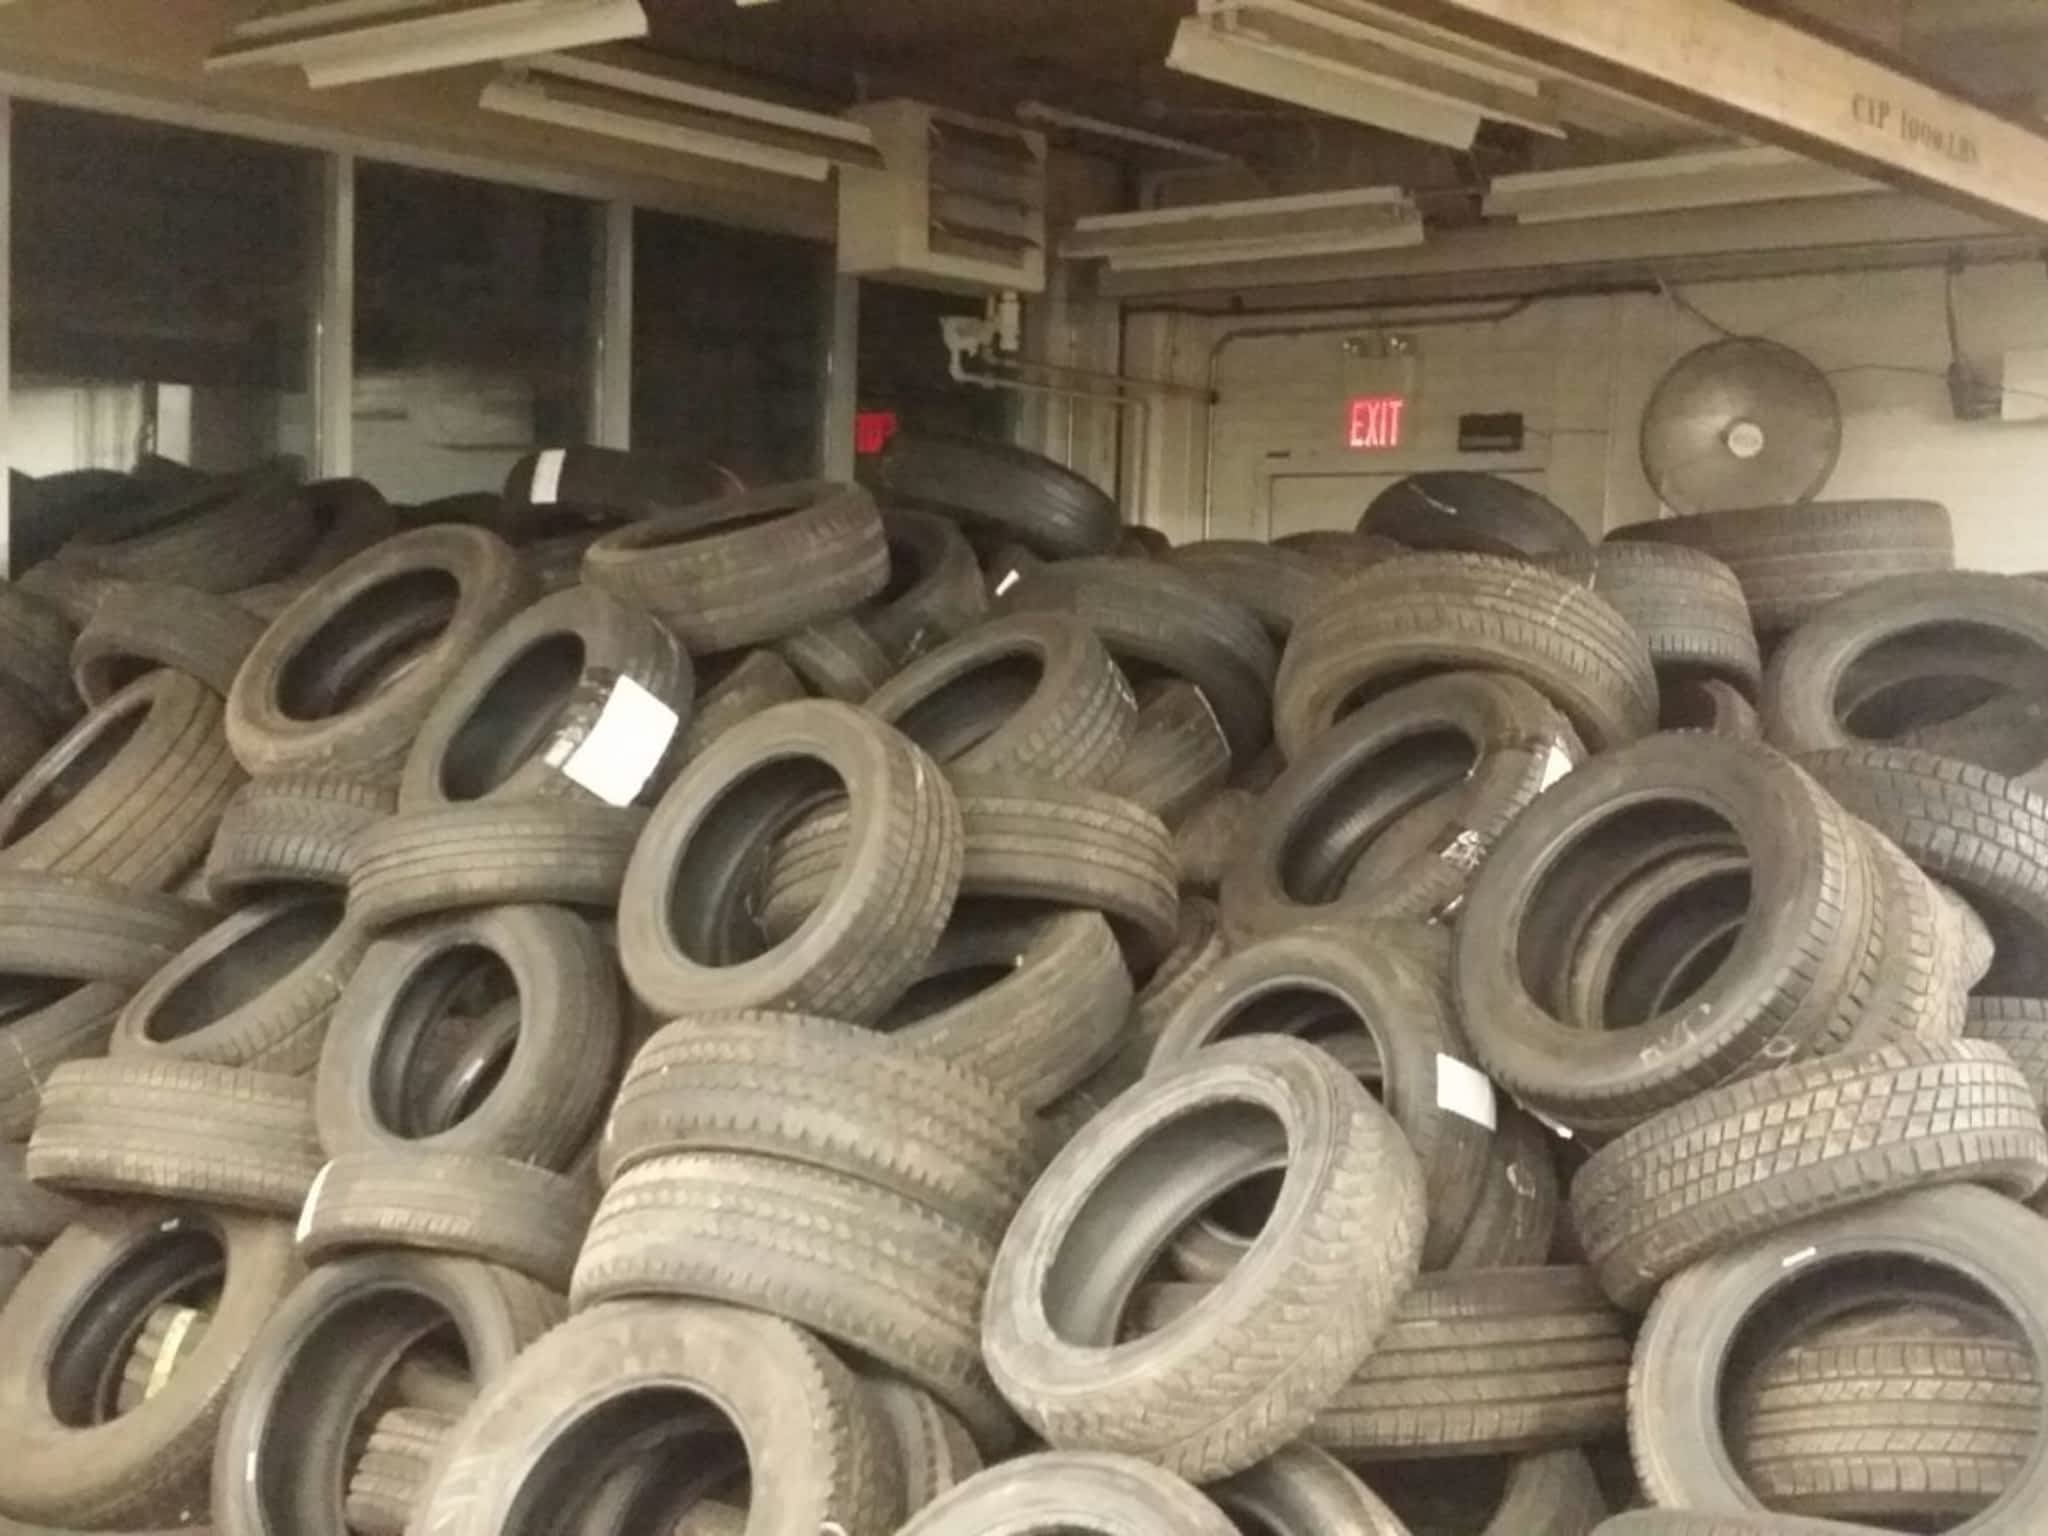 photo RSG Wholesale Tires